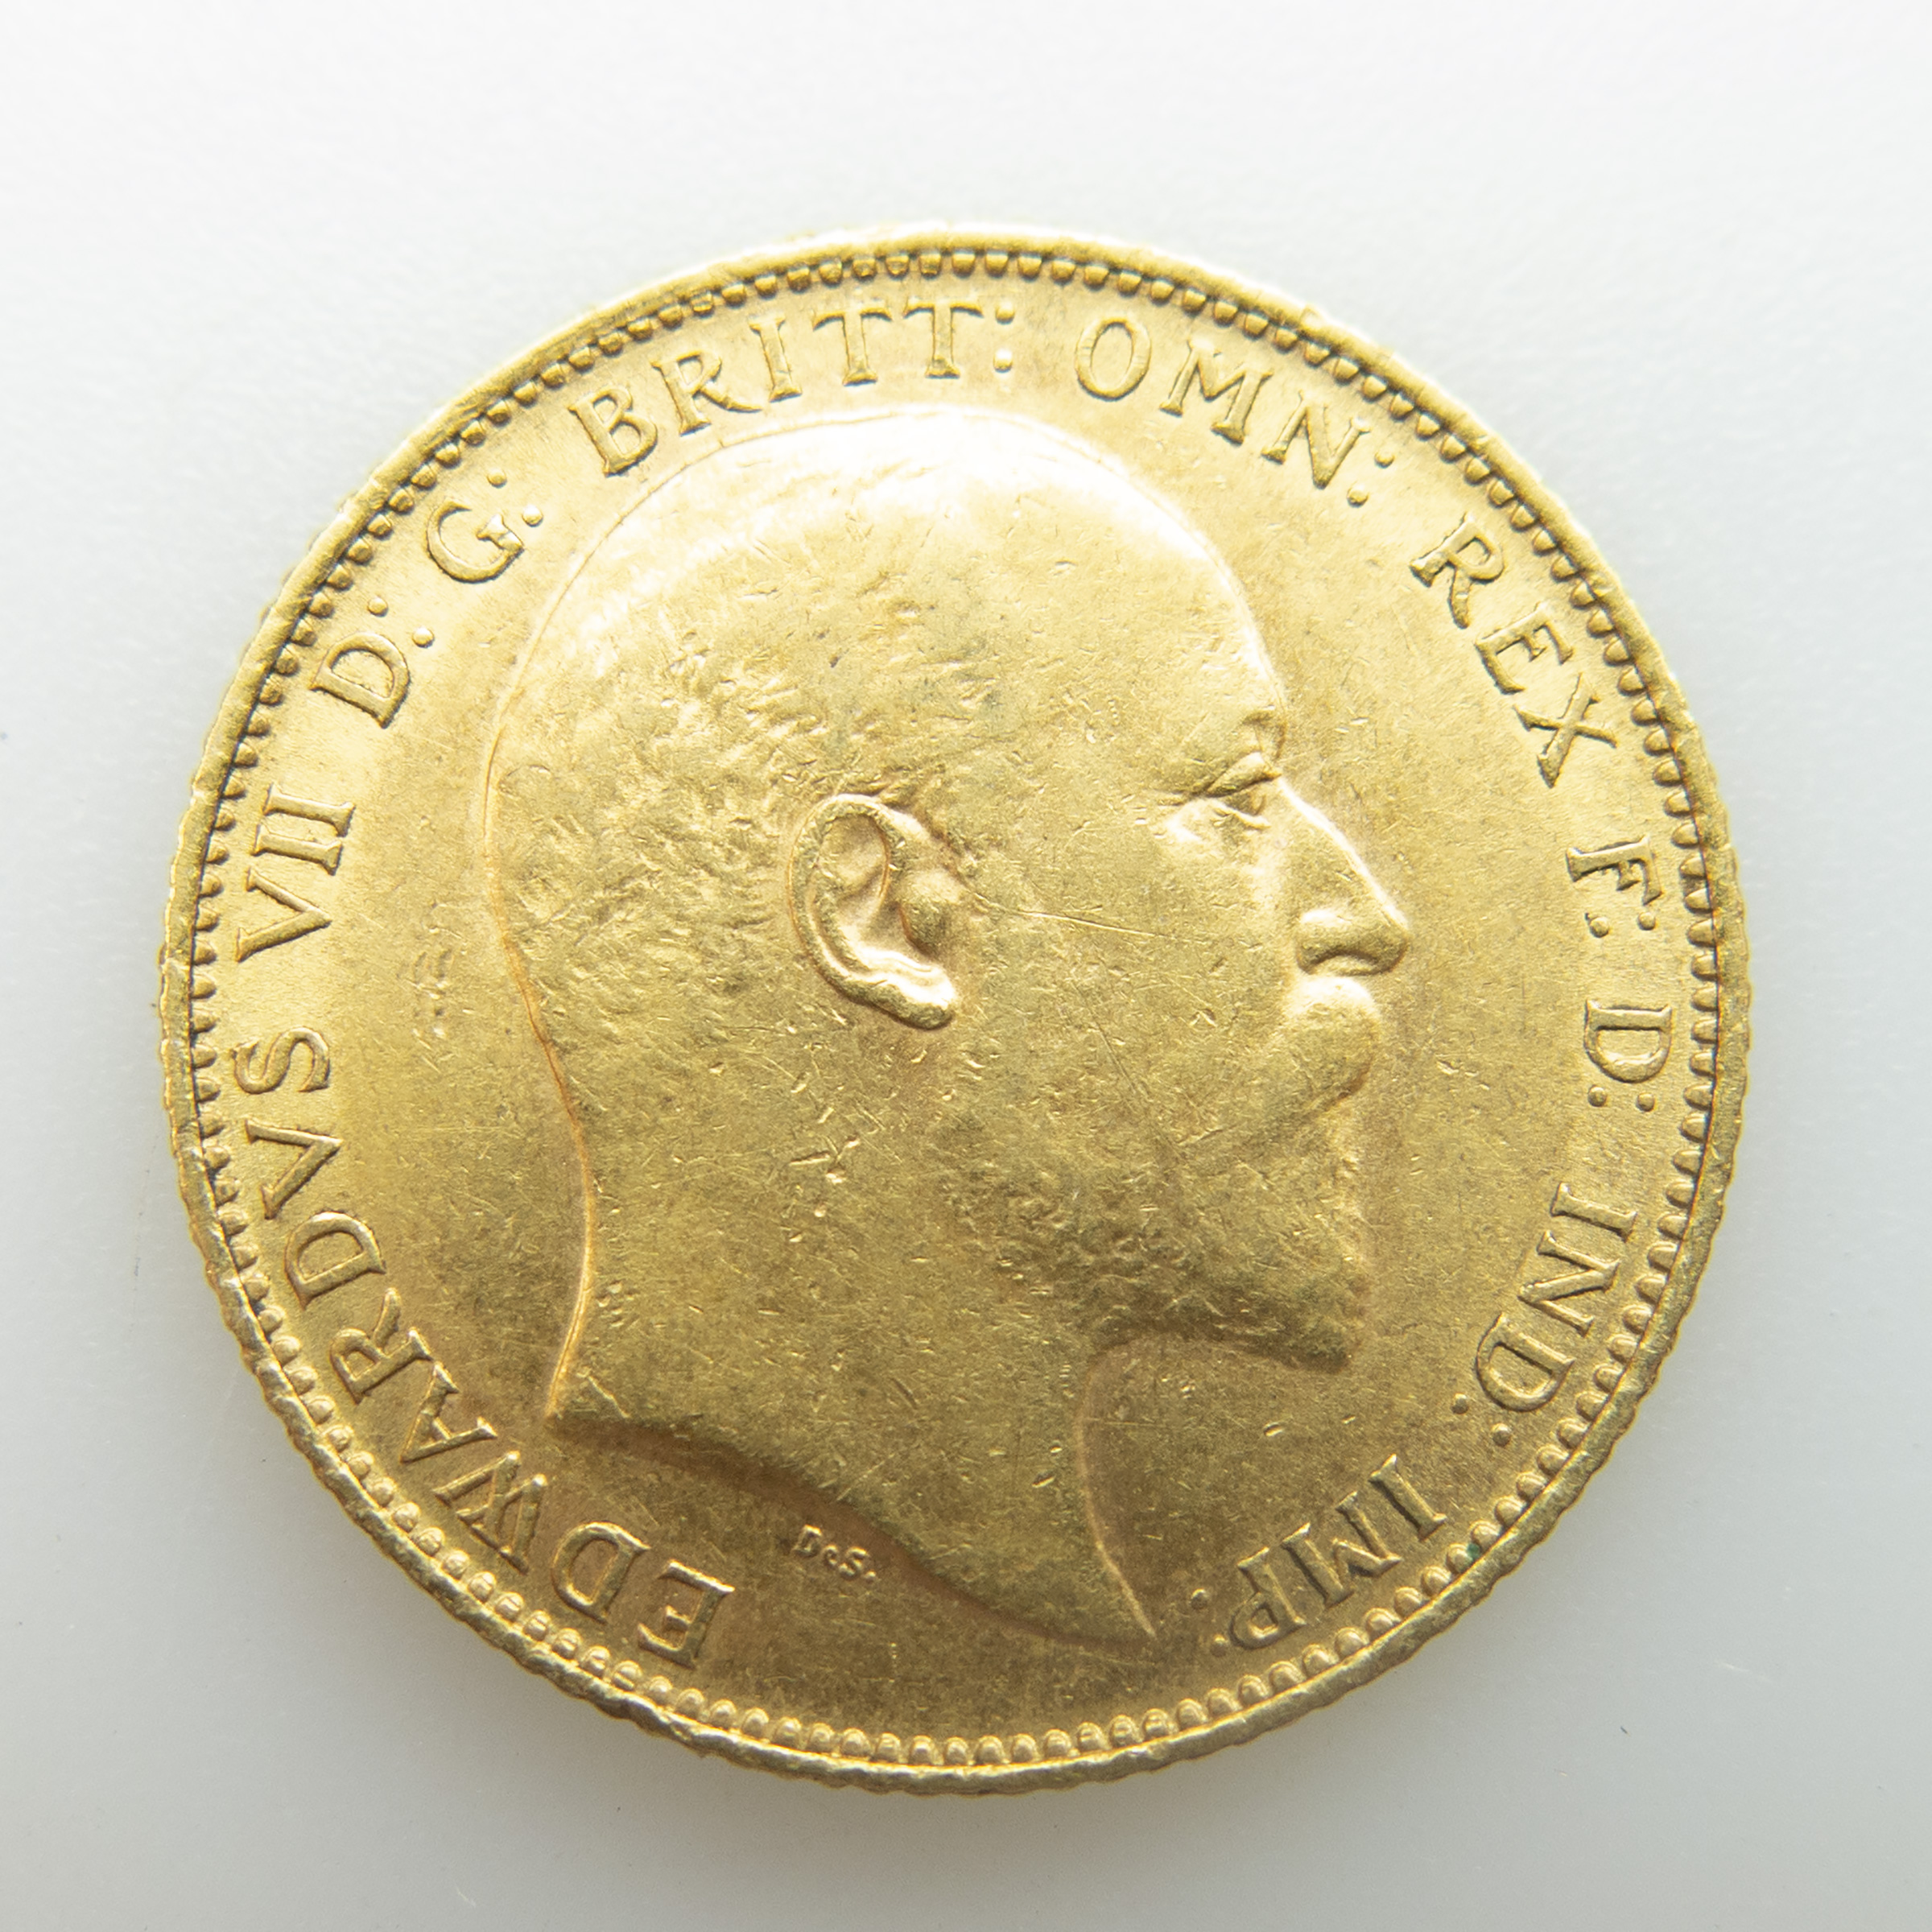 British 1902 Gold Sovereign